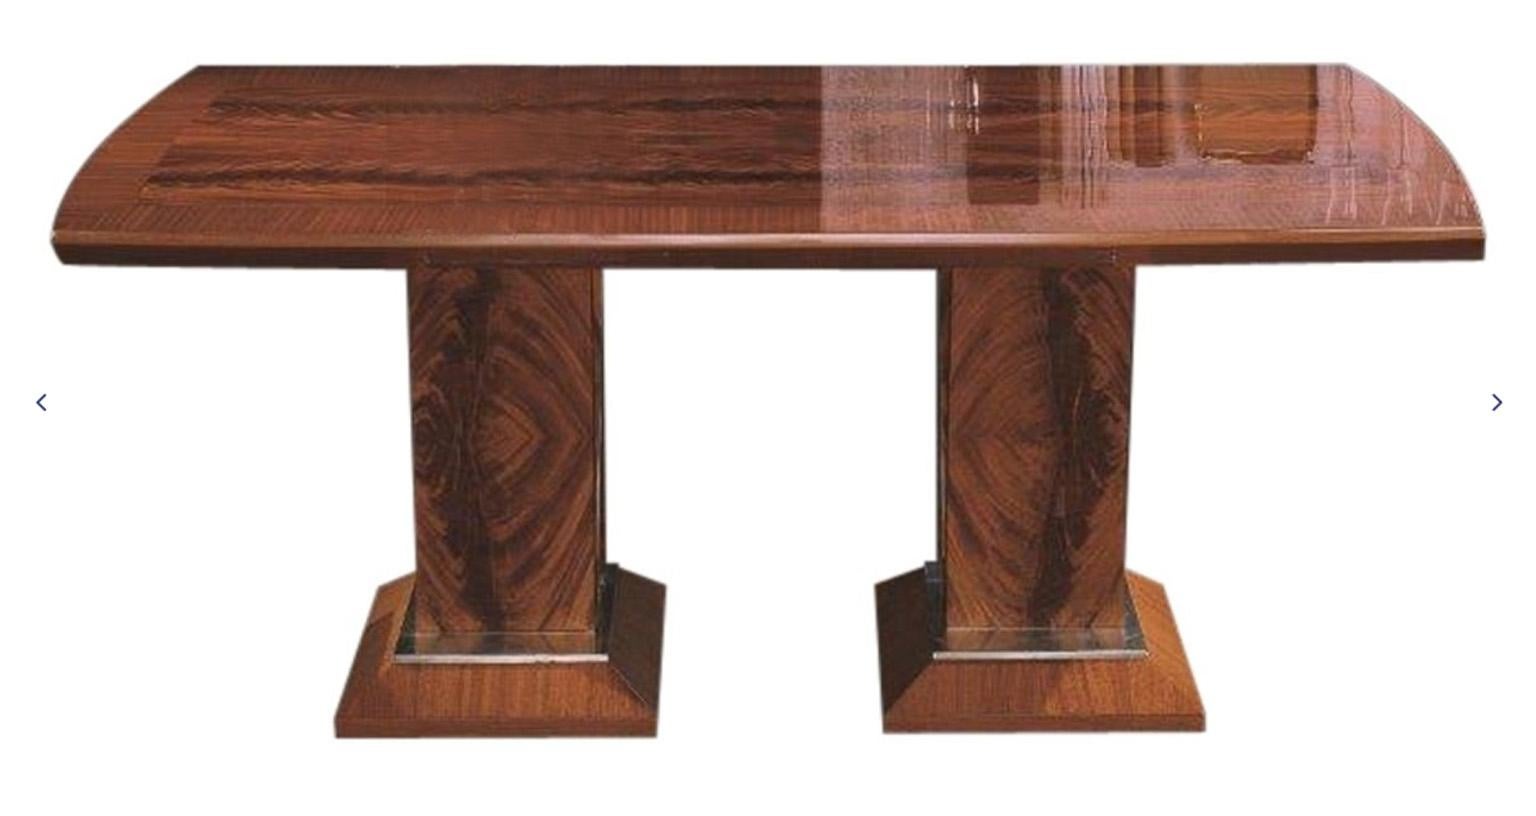 Rechteckiger Tisch in Bootsform mit zwei Verlängerungsplatten.
Decke aus einer Kombination von Mahagoni und geradem Sapelimahagoni.
Details aus gebürstetem Stahl am Sockel.
Offener Tisch: 112